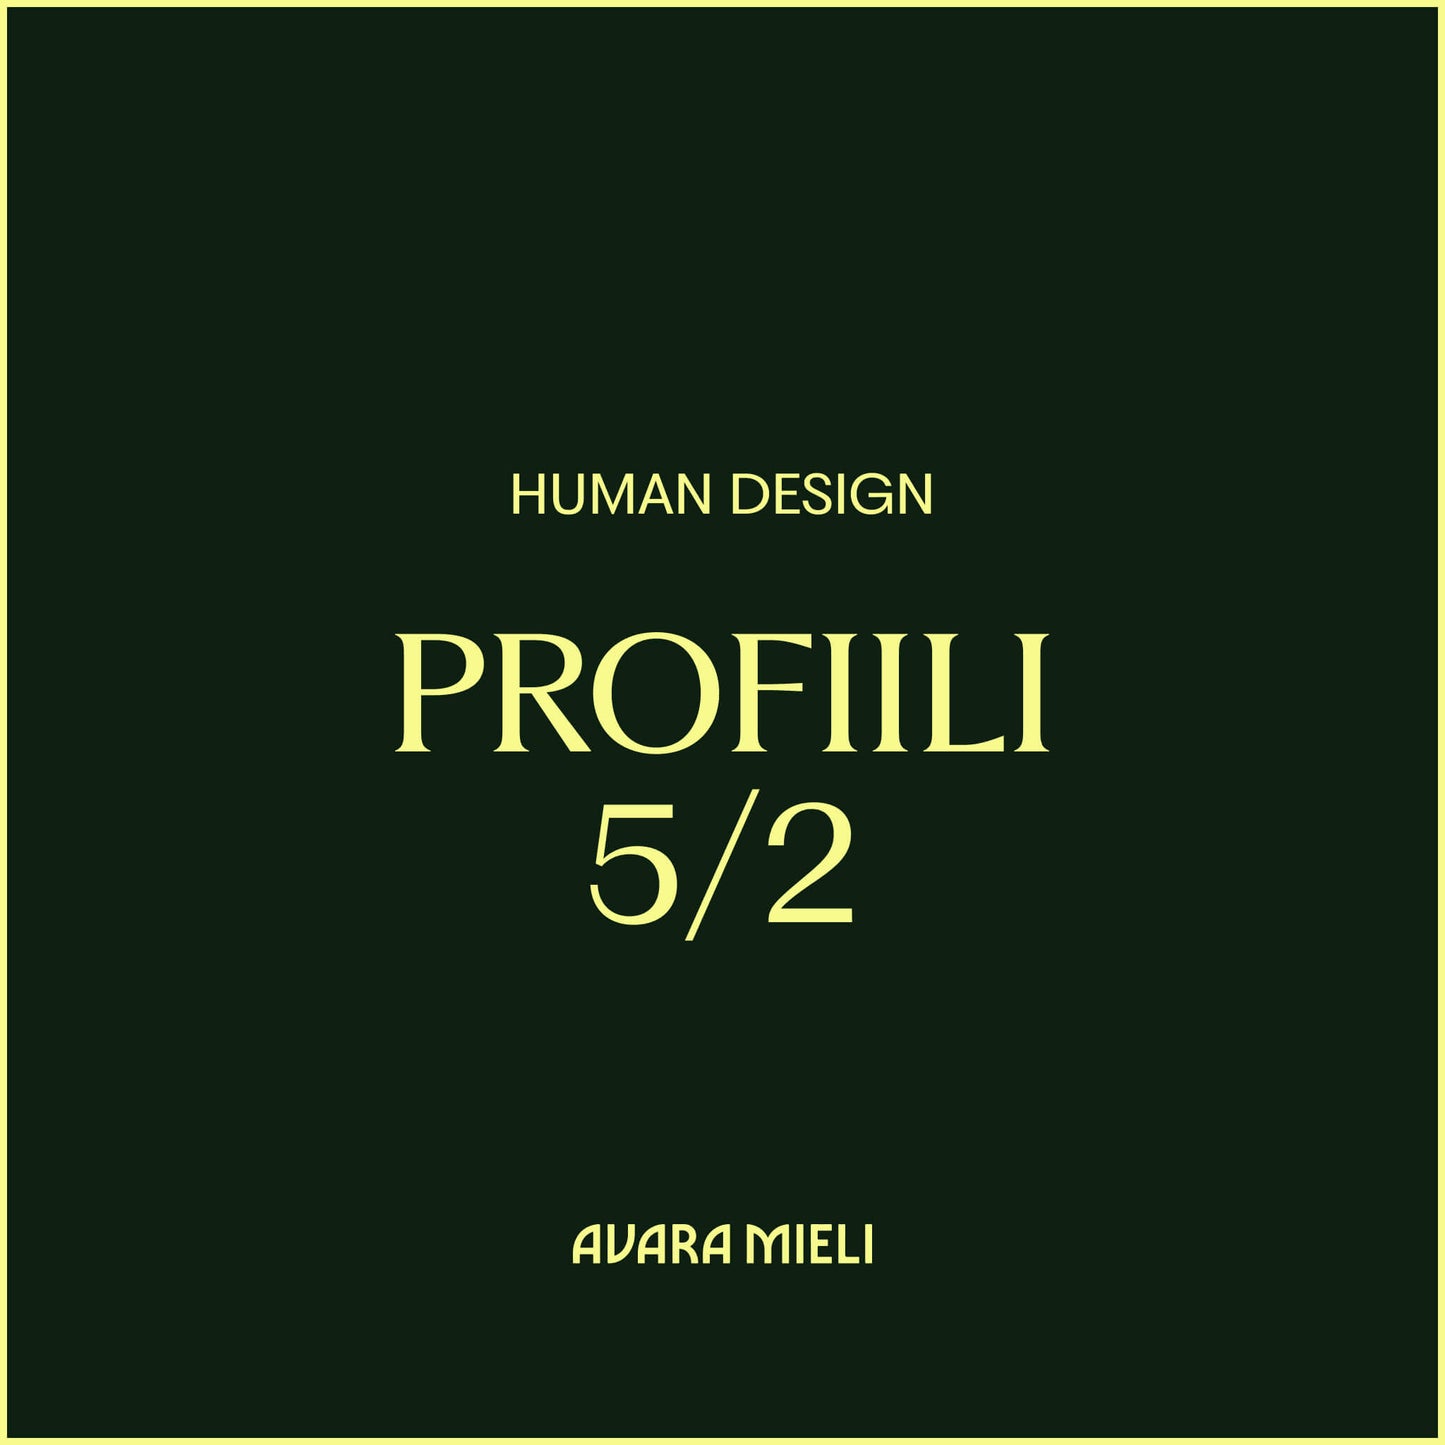 Human Design Profiili 5/2